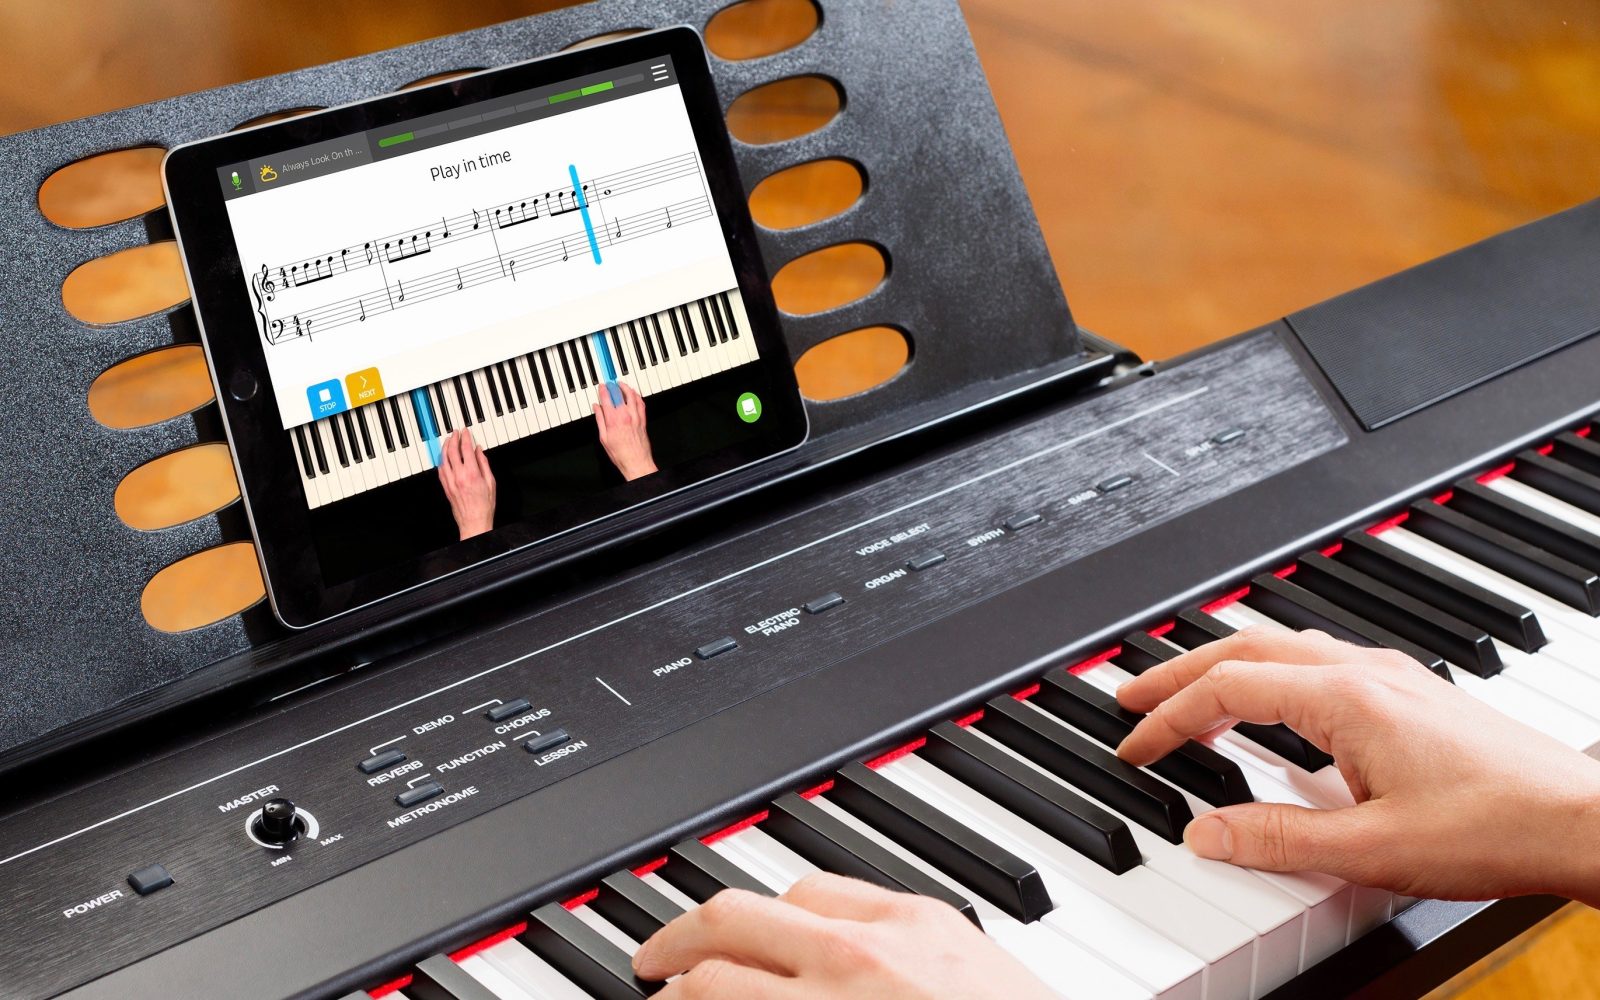 Top phần mềm và ứng dụng dạy piano tốt nhất hiện nay, tự học thật vui vẻ và dễ dàng